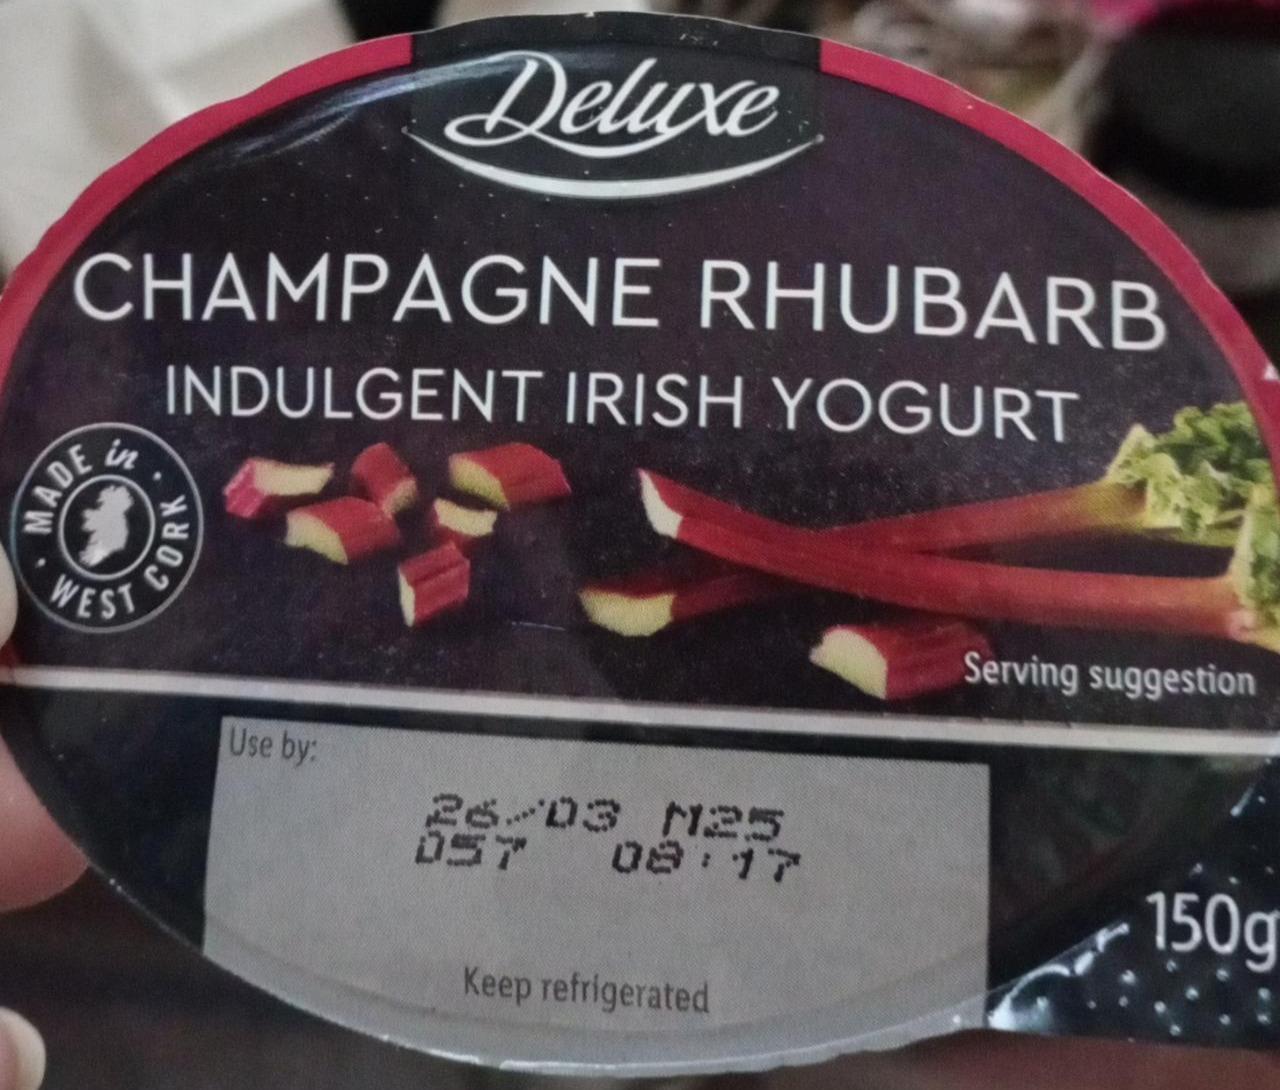 Fotografie - Champagne Rhubarb indulgent irish yogurt Deluxe